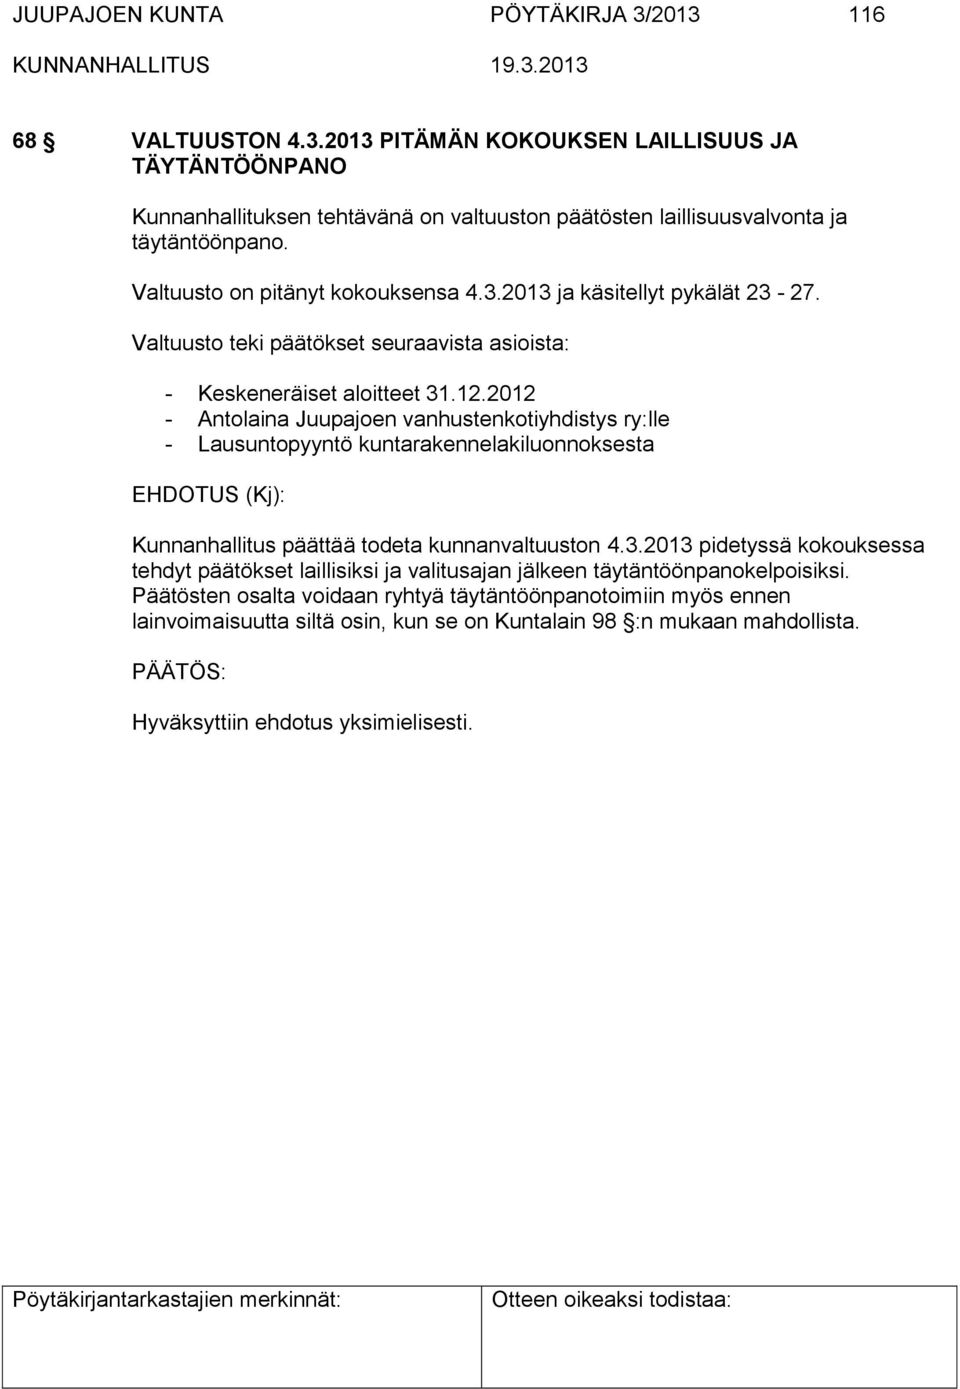 2012 - Antolaina Juupajoen vanhustenkotiyhdistys ry:lle - Lausuntopyyntö kuntarakennelakiluonnoksesta Kunnanhallitus päättää todeta kunnanvaltuuston 4.3.